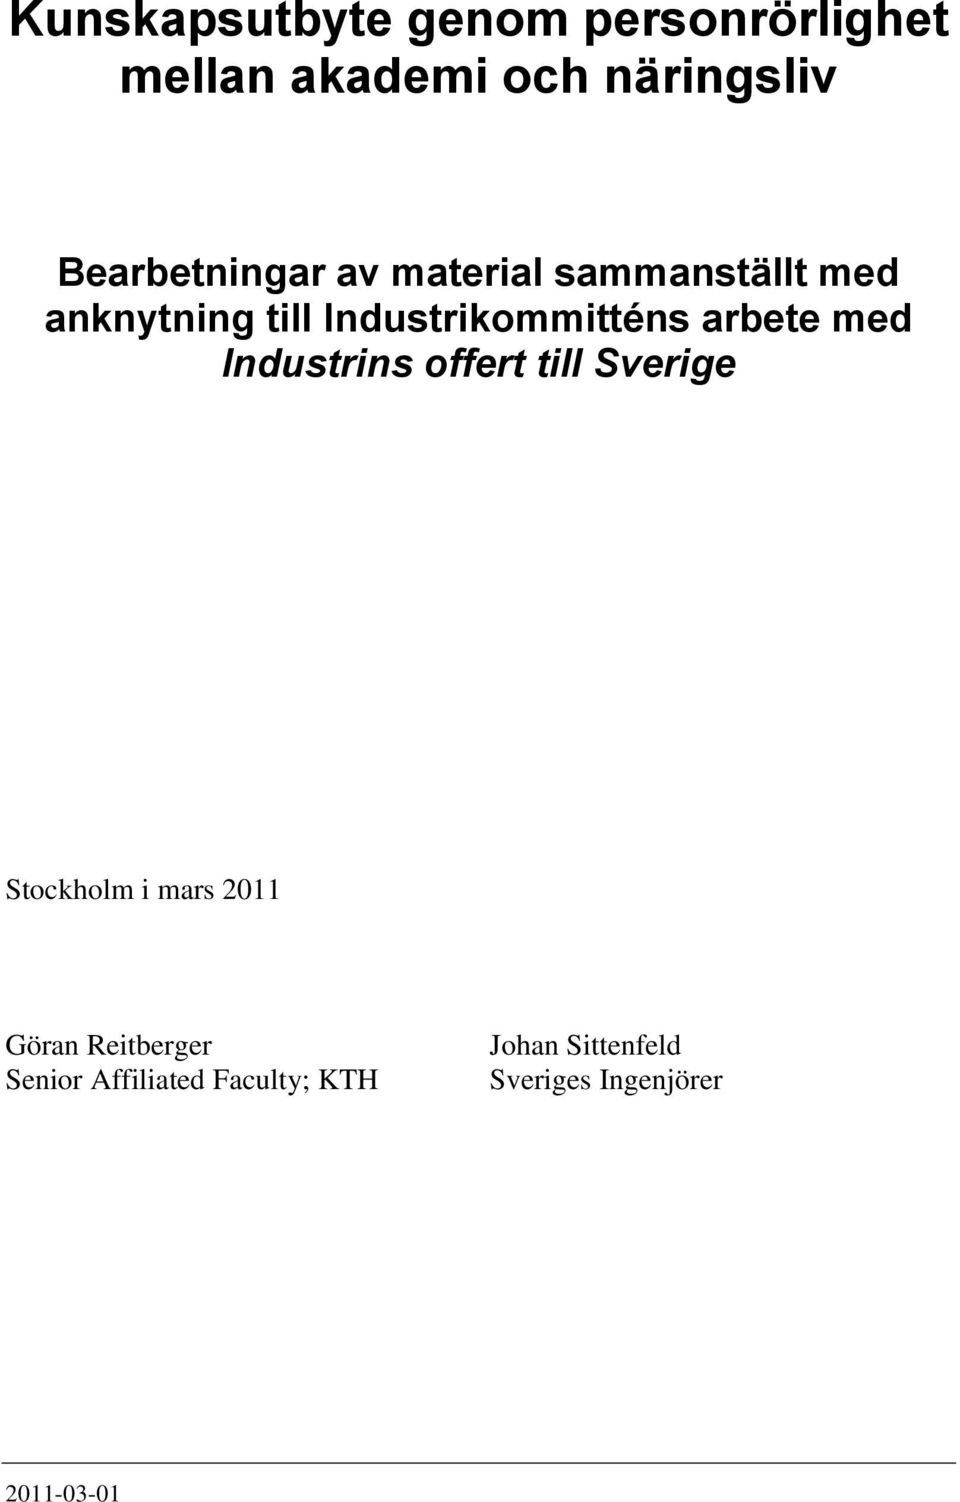 Industrikommitténs arbete med Industrins offert till Sverige Stockholm i